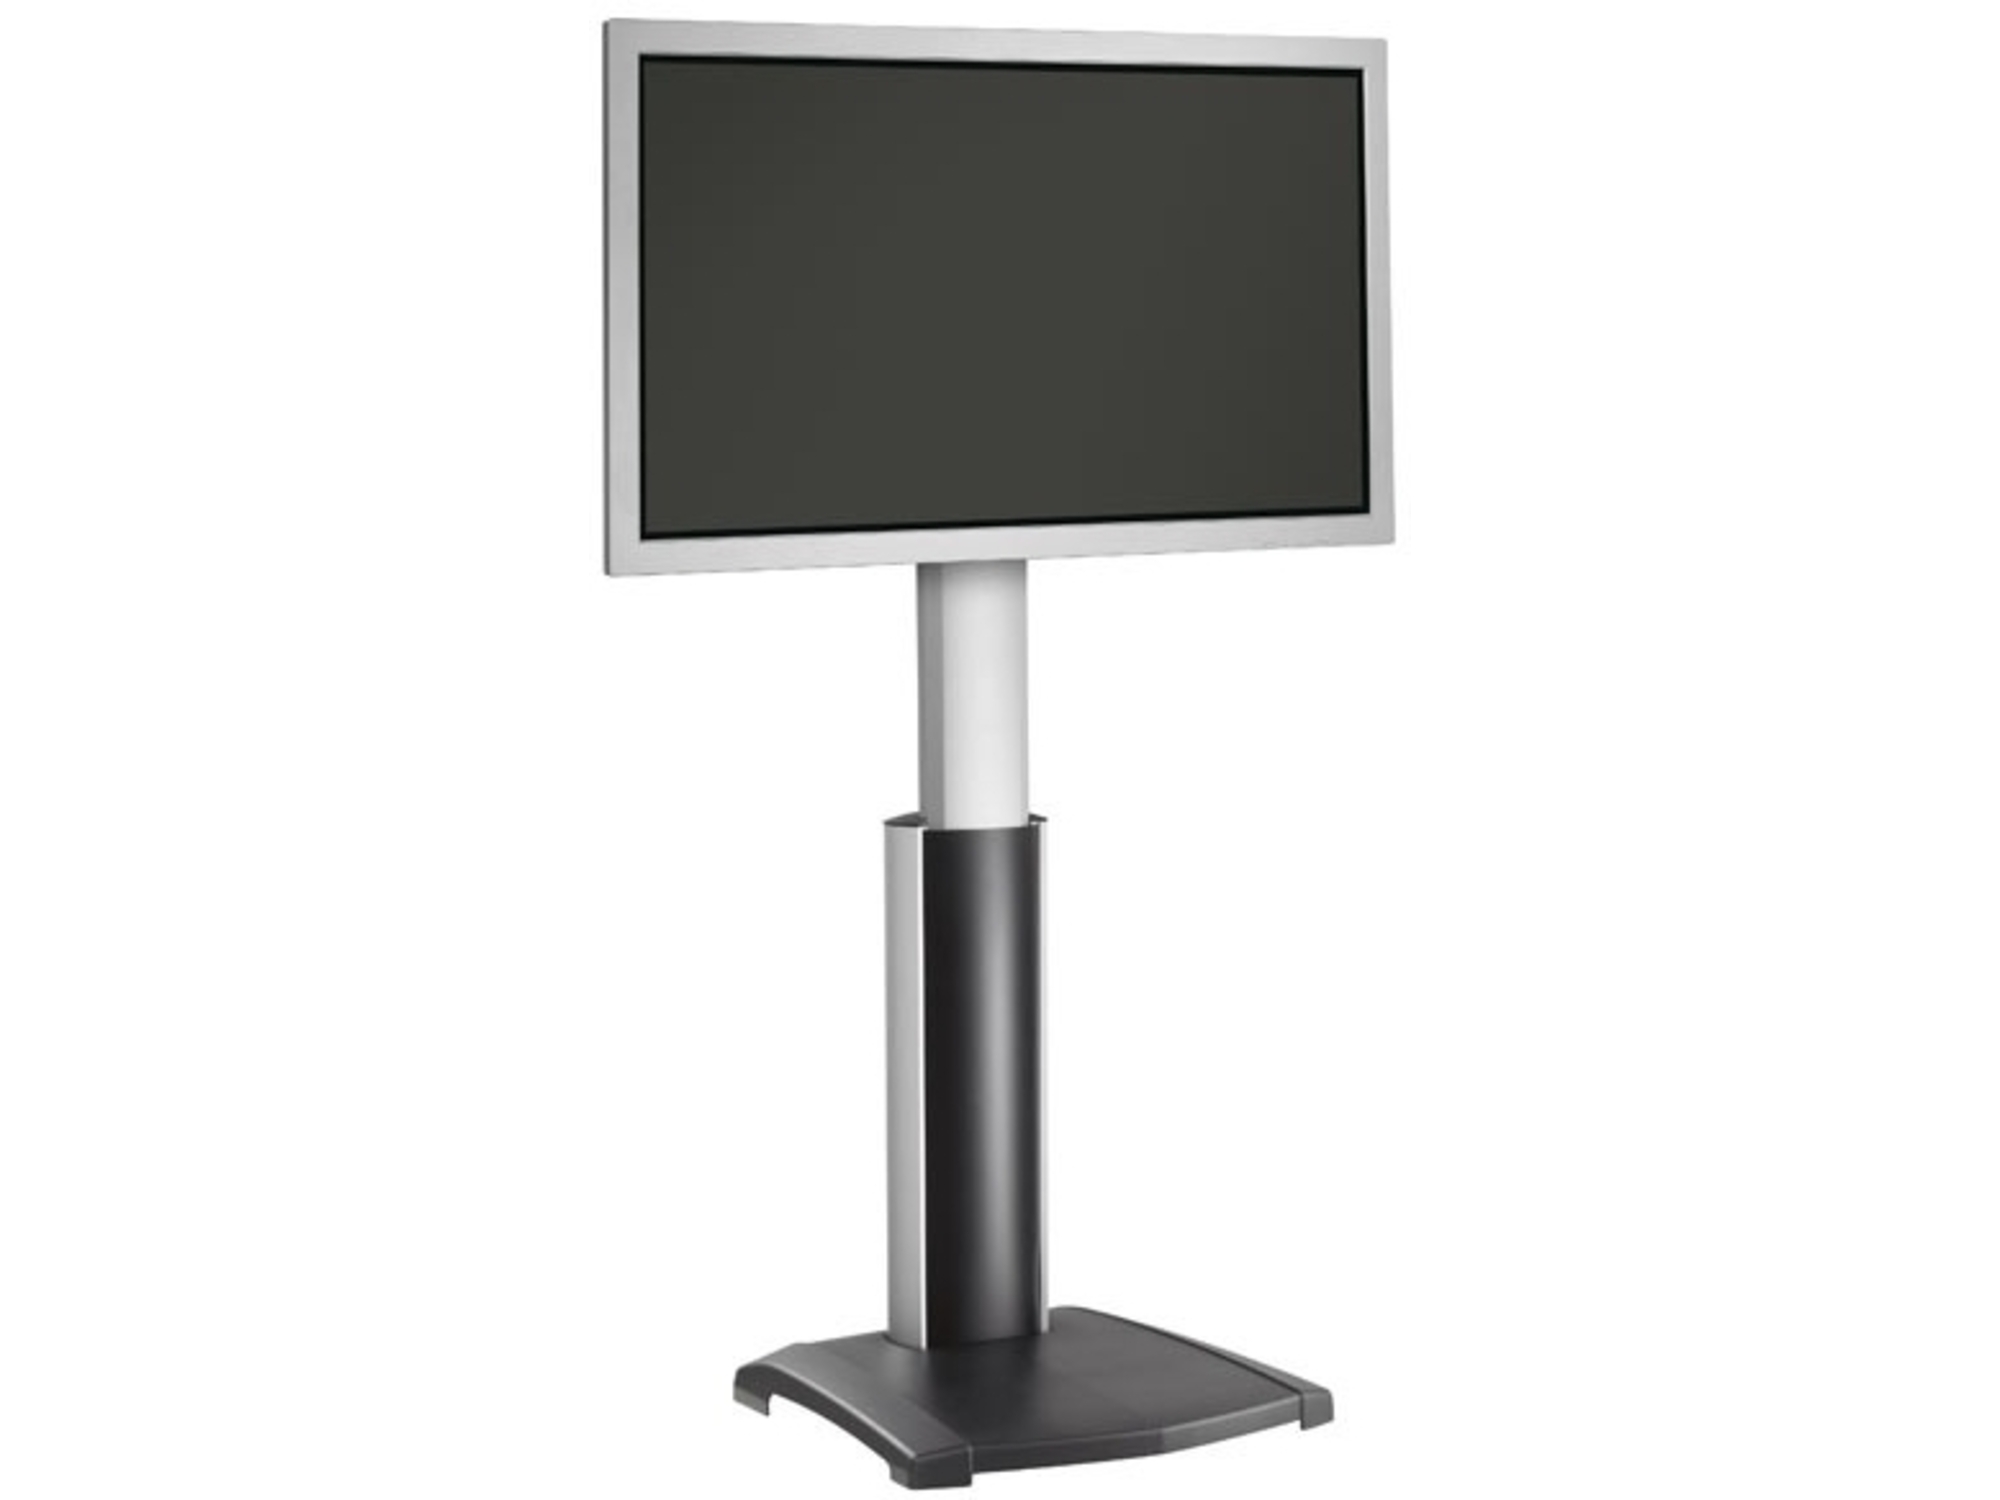 VOGELS samostoječi TV nosilec do 65 inch, črno-srebrne barve PFF 2410